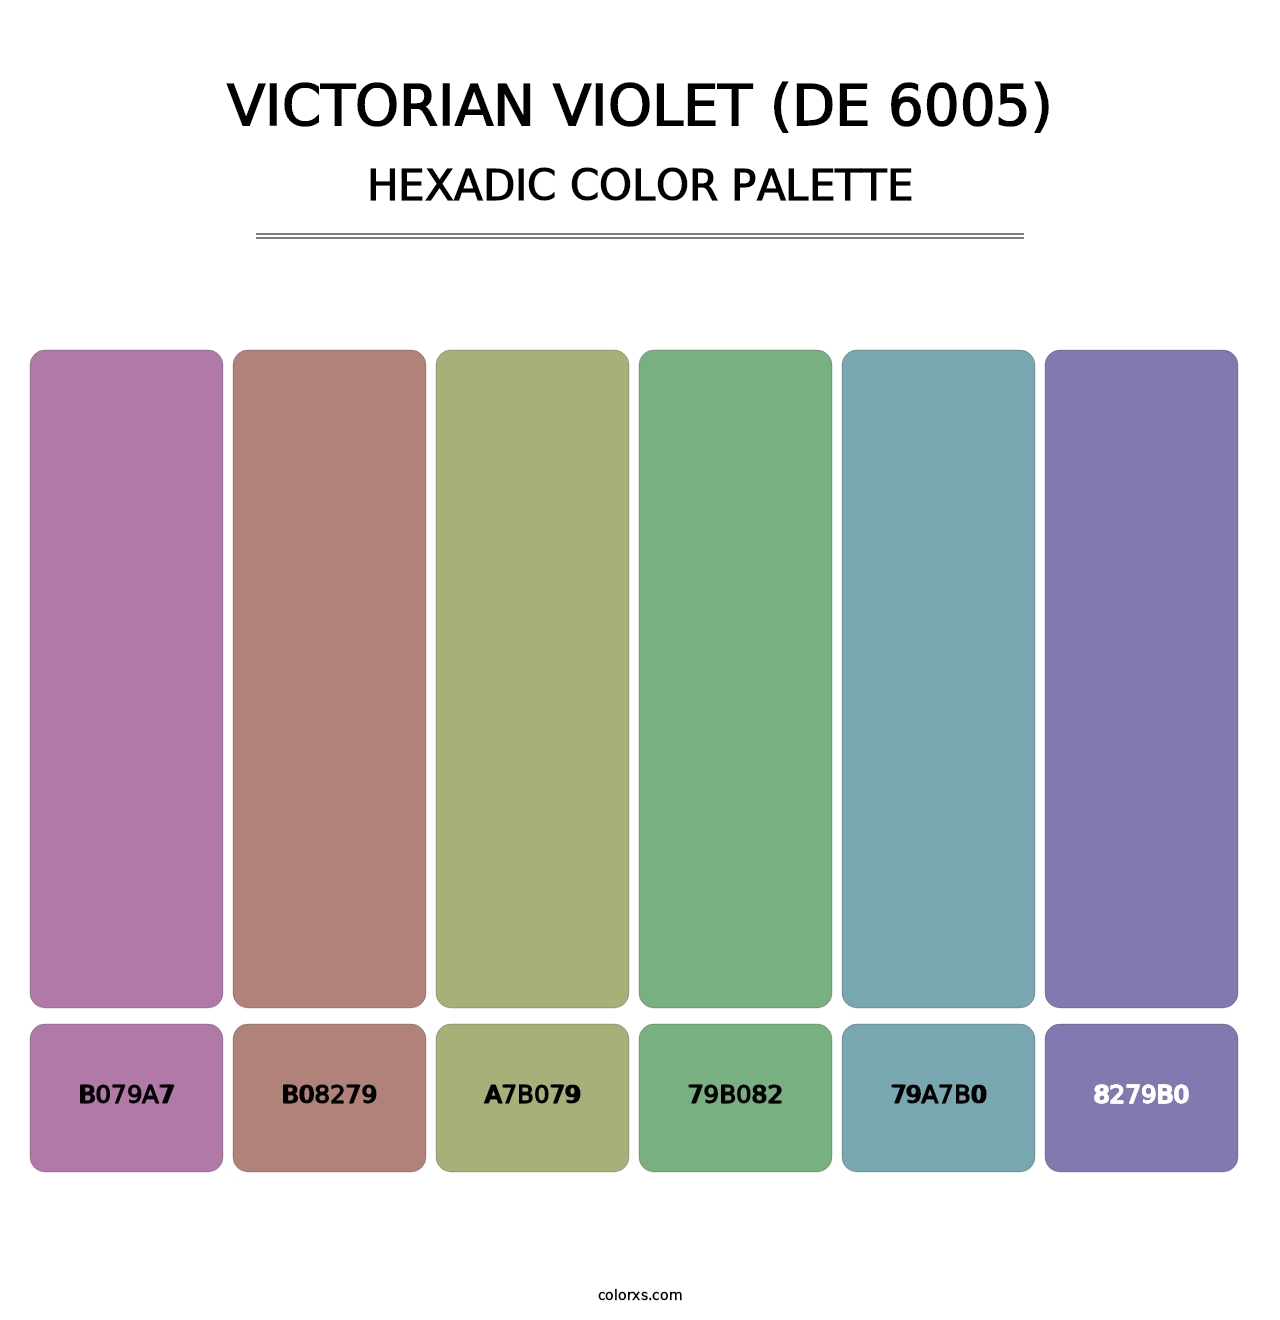 Victorian Violet (DE 6005) - Hexadic Color Palette